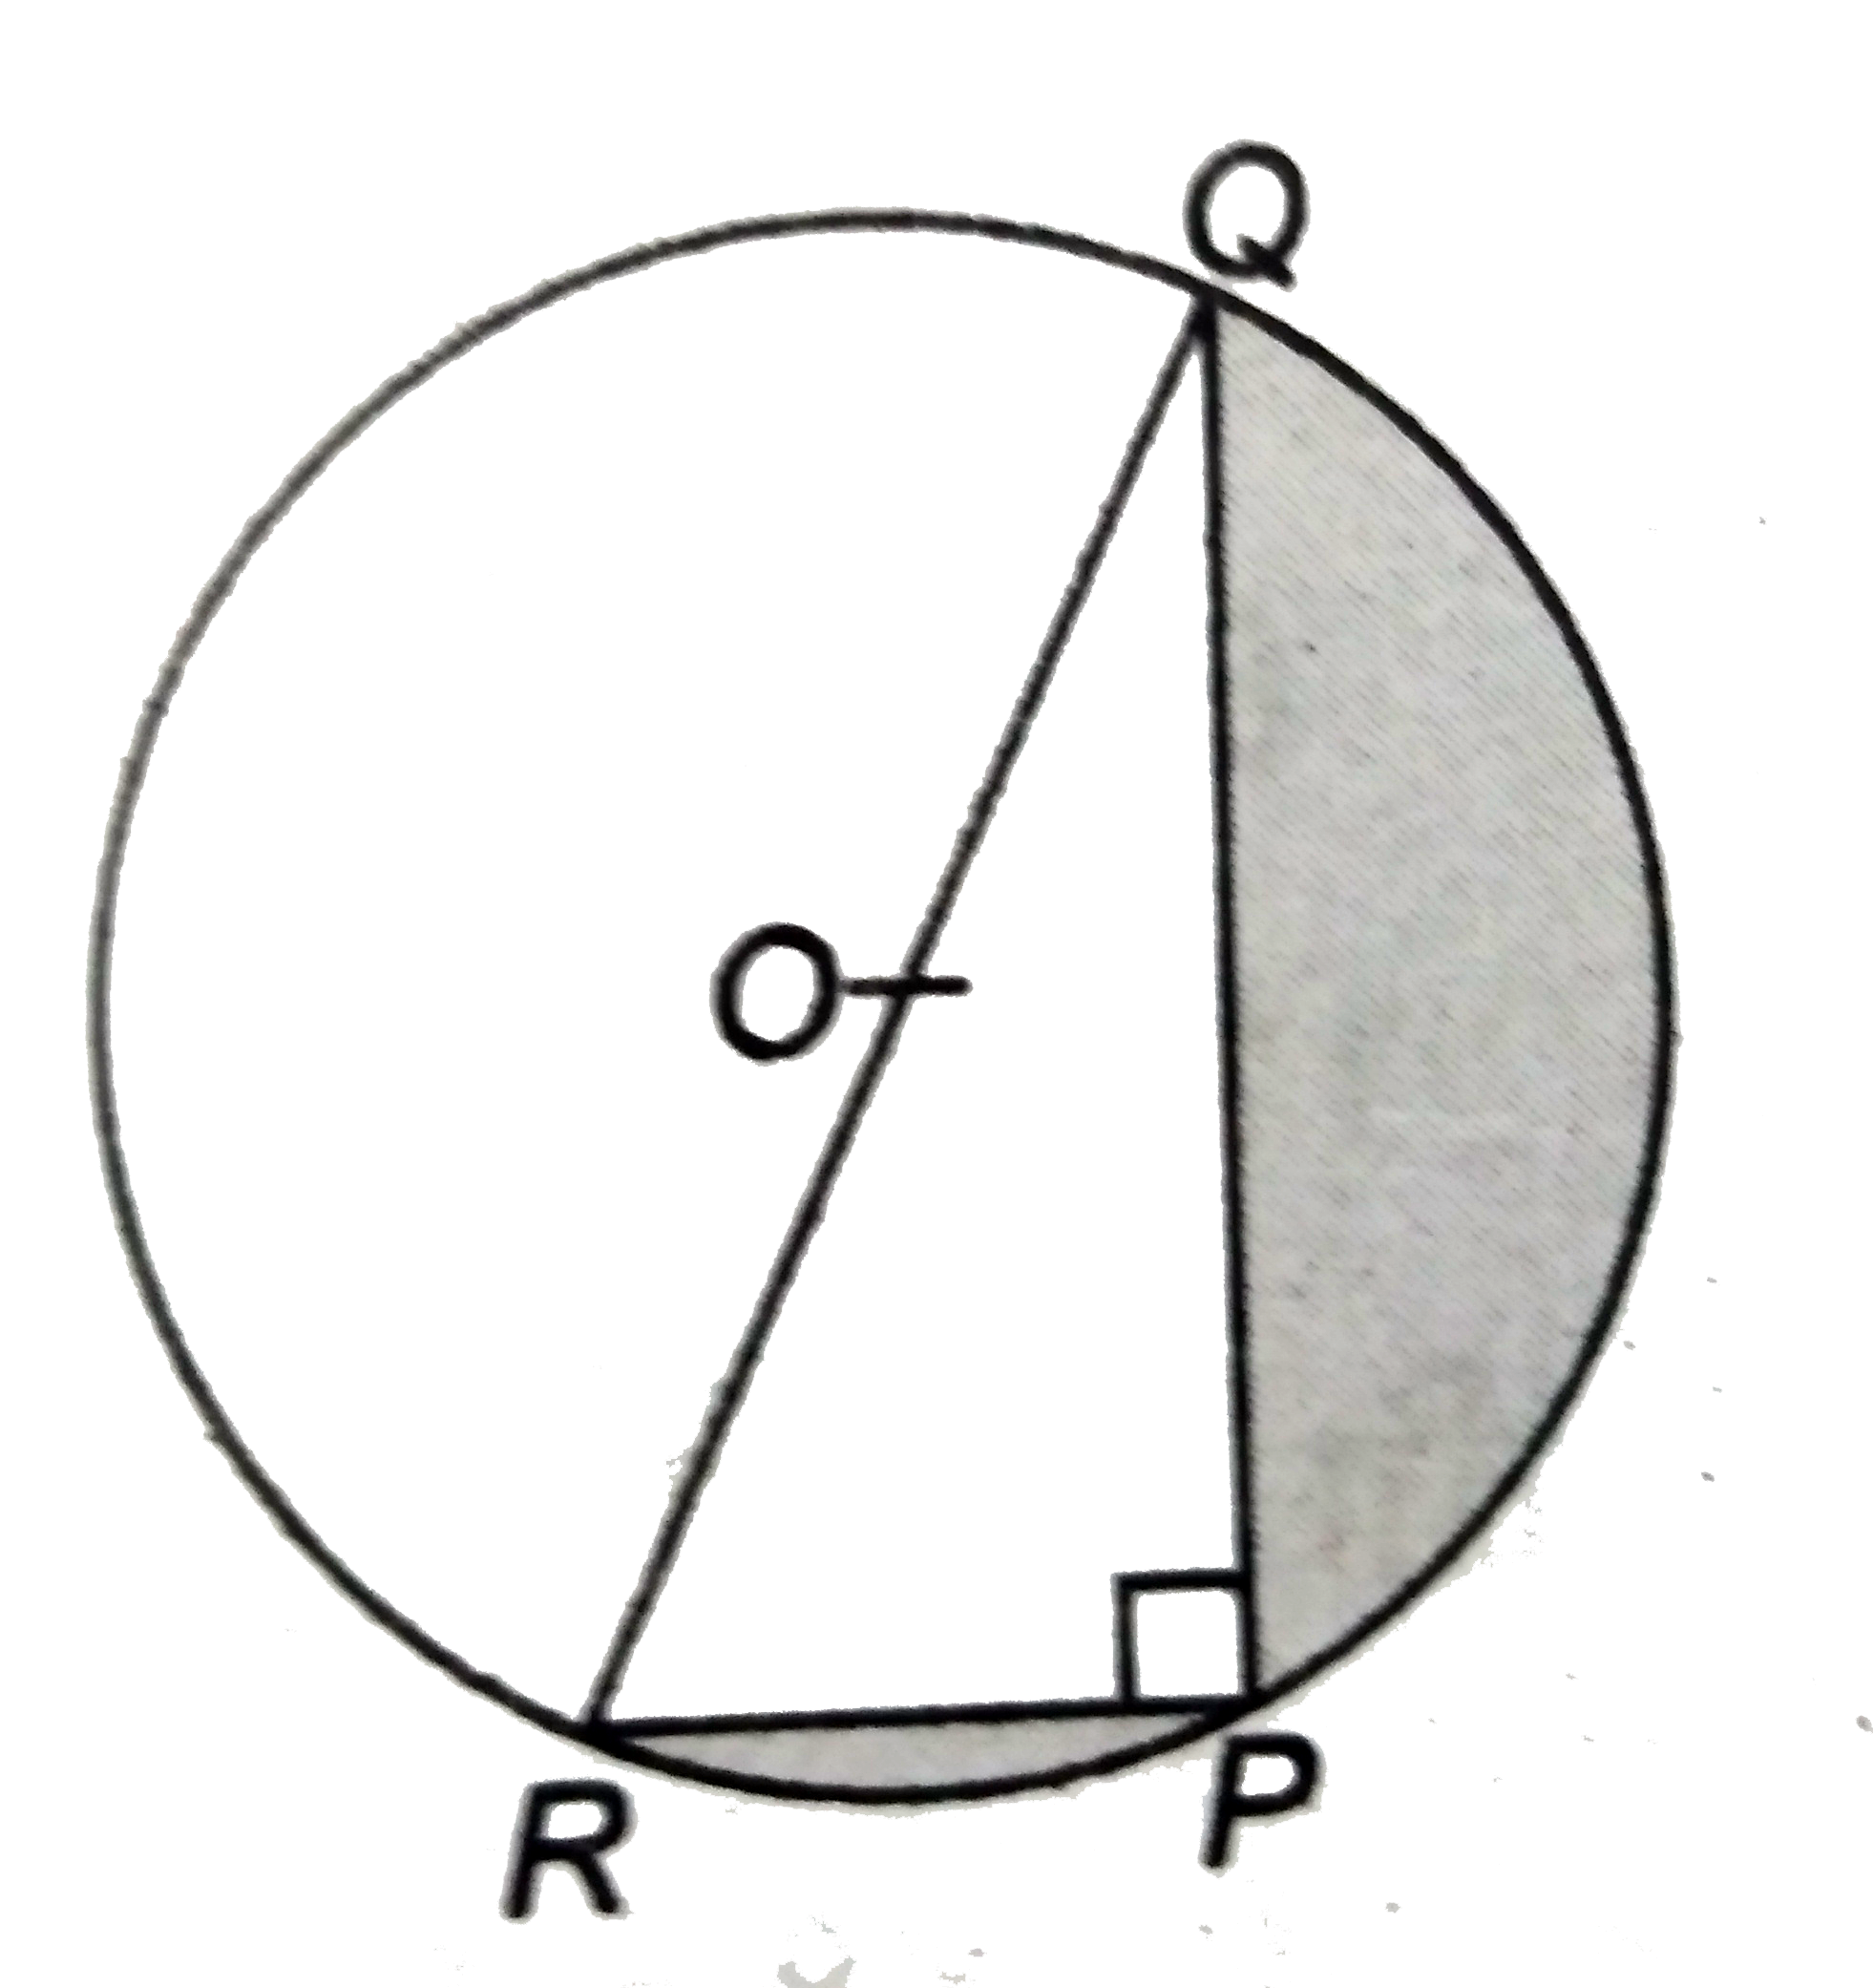 दी आकृति में ,PQ = 24   सेमी,PR = 7  सेमी और O वृत्त का केंद्र है । छायांकित  भाग का क्षेत्रफल  ज्ञात कीजिए । ( pi = 3.14 का प्रयोग करें )